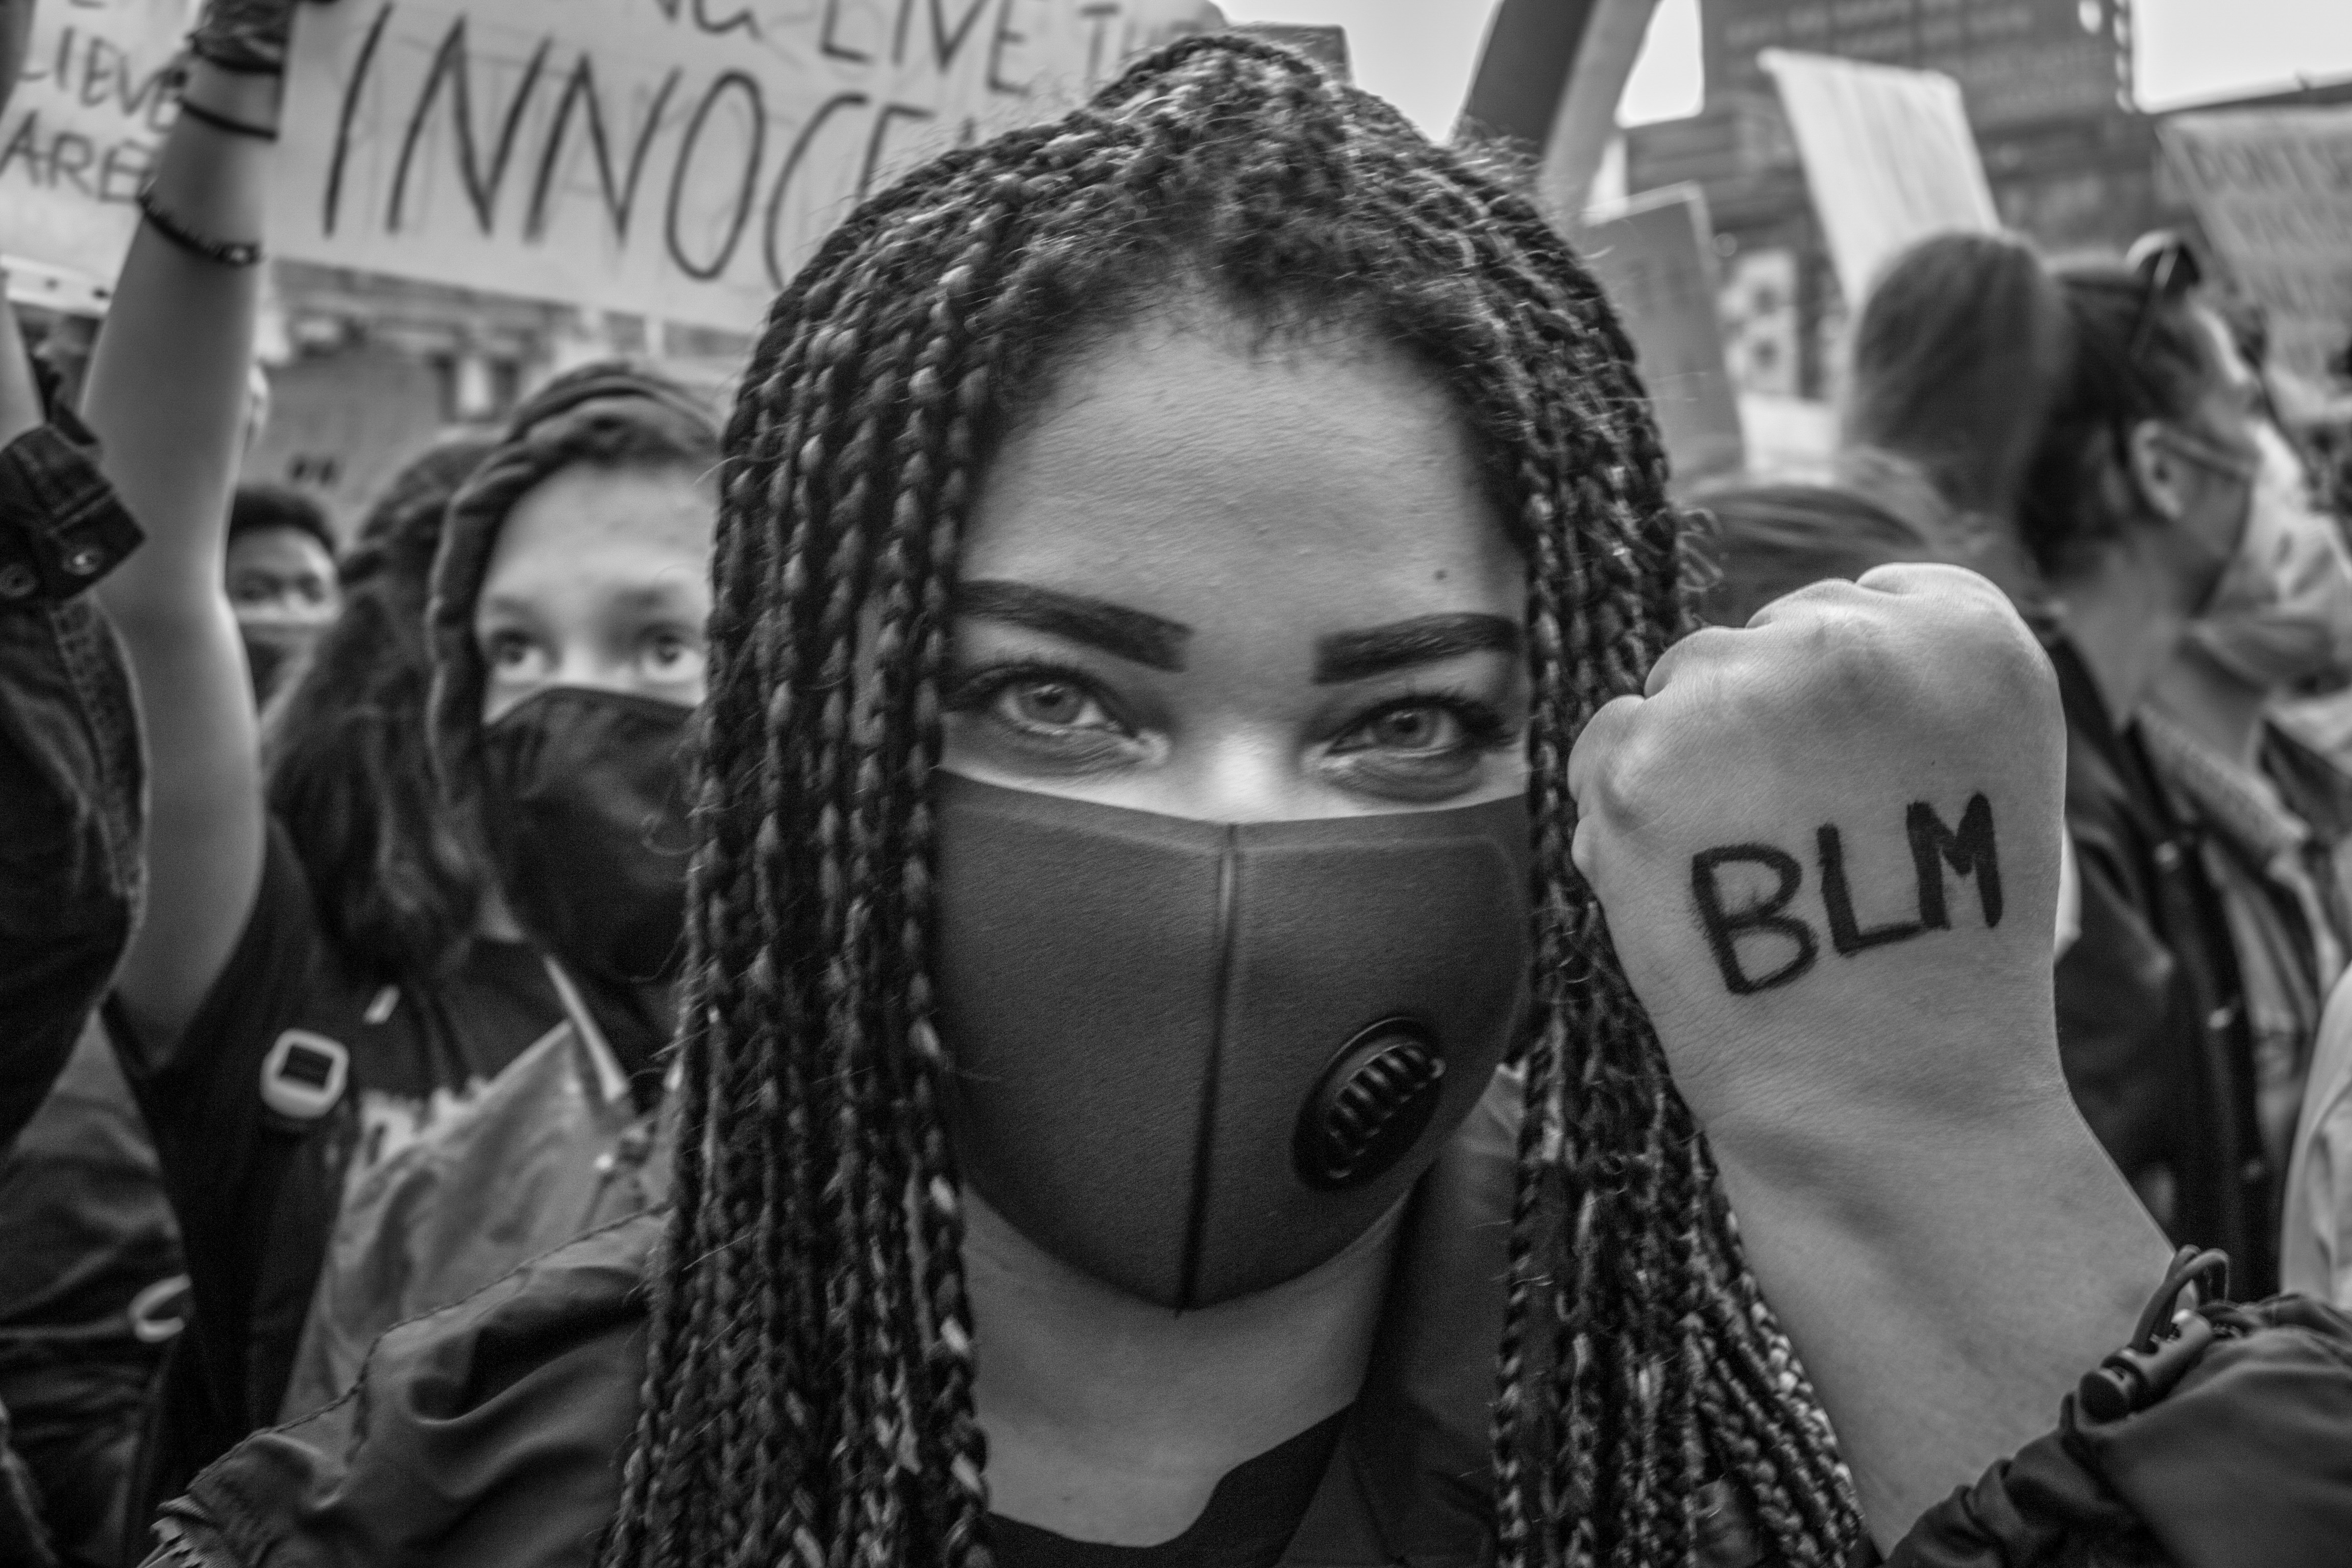 Una ragazza mostra il dorso della sua mano con scritto "Blm", acronimo di Black Lives Matter (foto di Luca Covino)